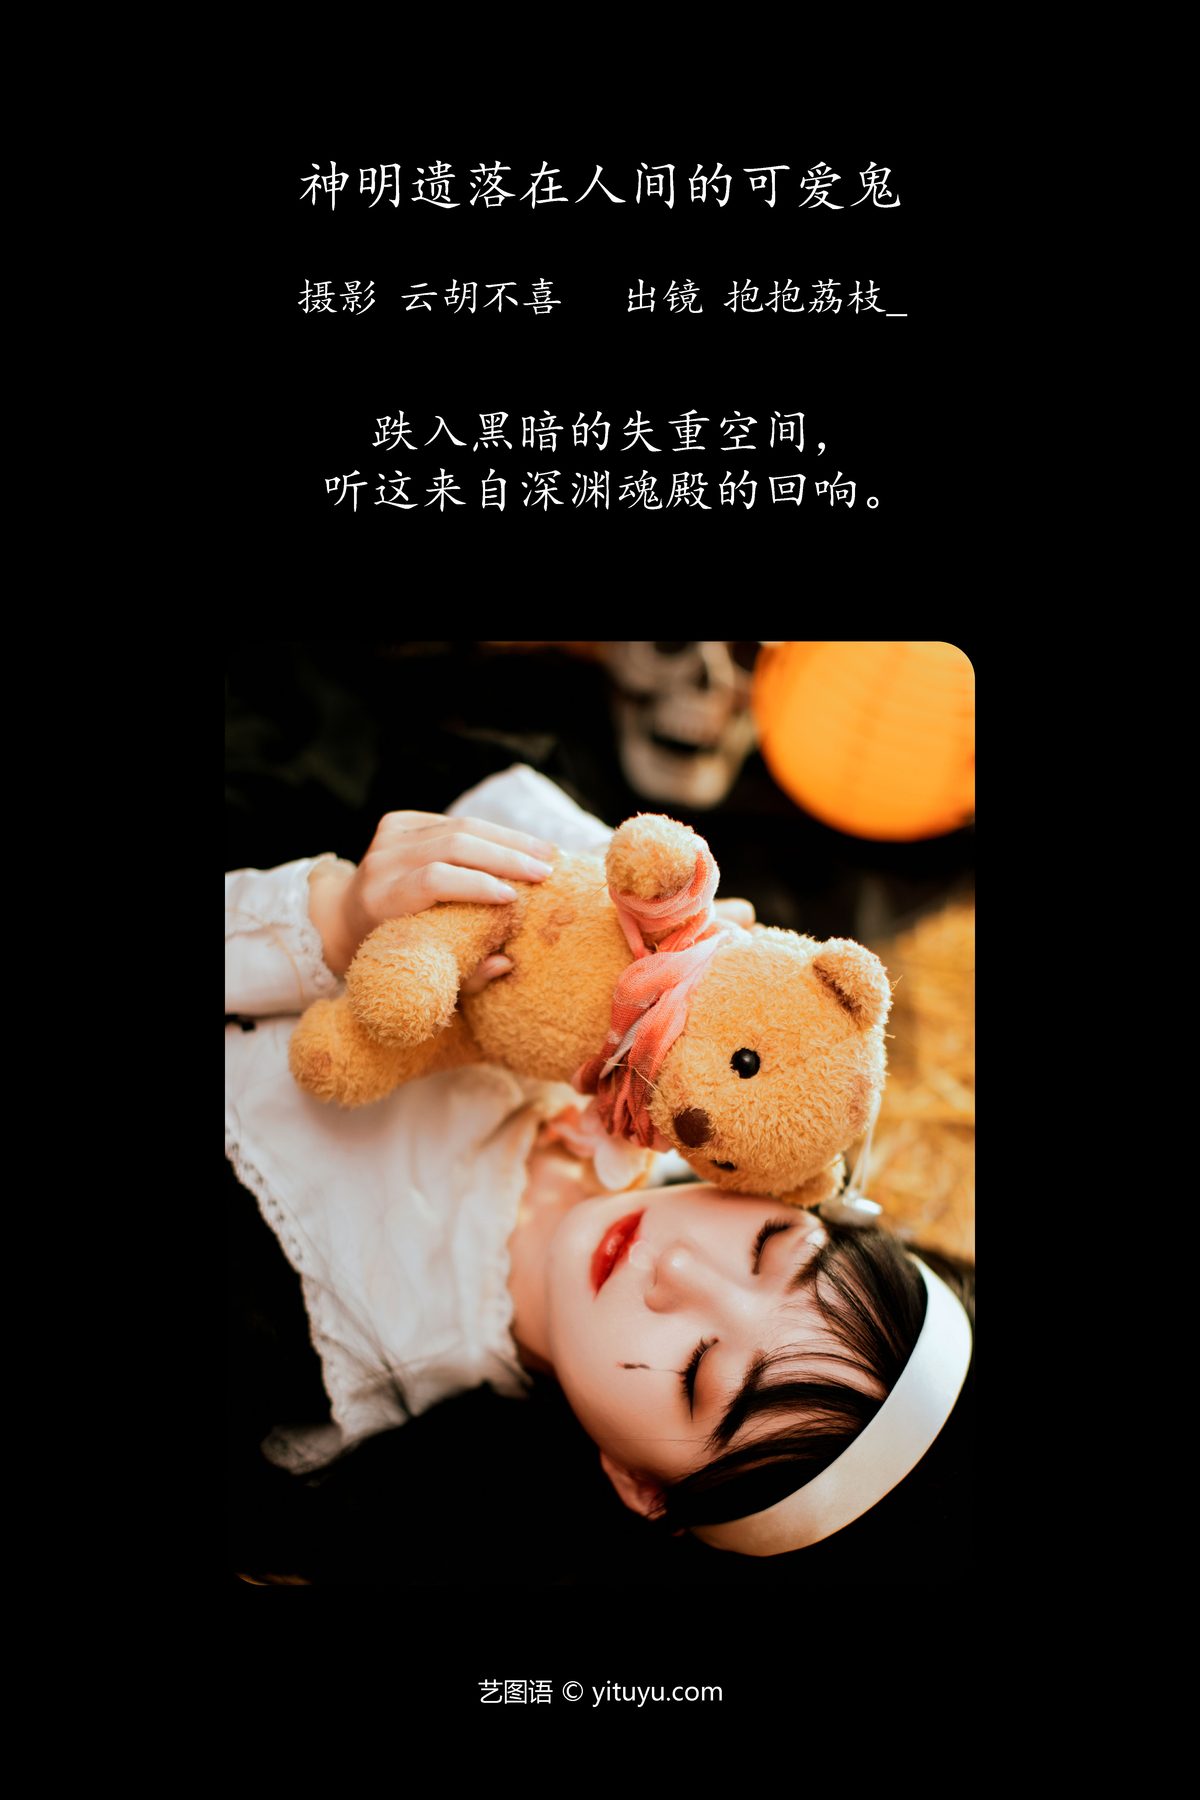 YiTuYu艺图语 Vol 5920 Bao Bao Li Zhi 0001 7914110420.jpg